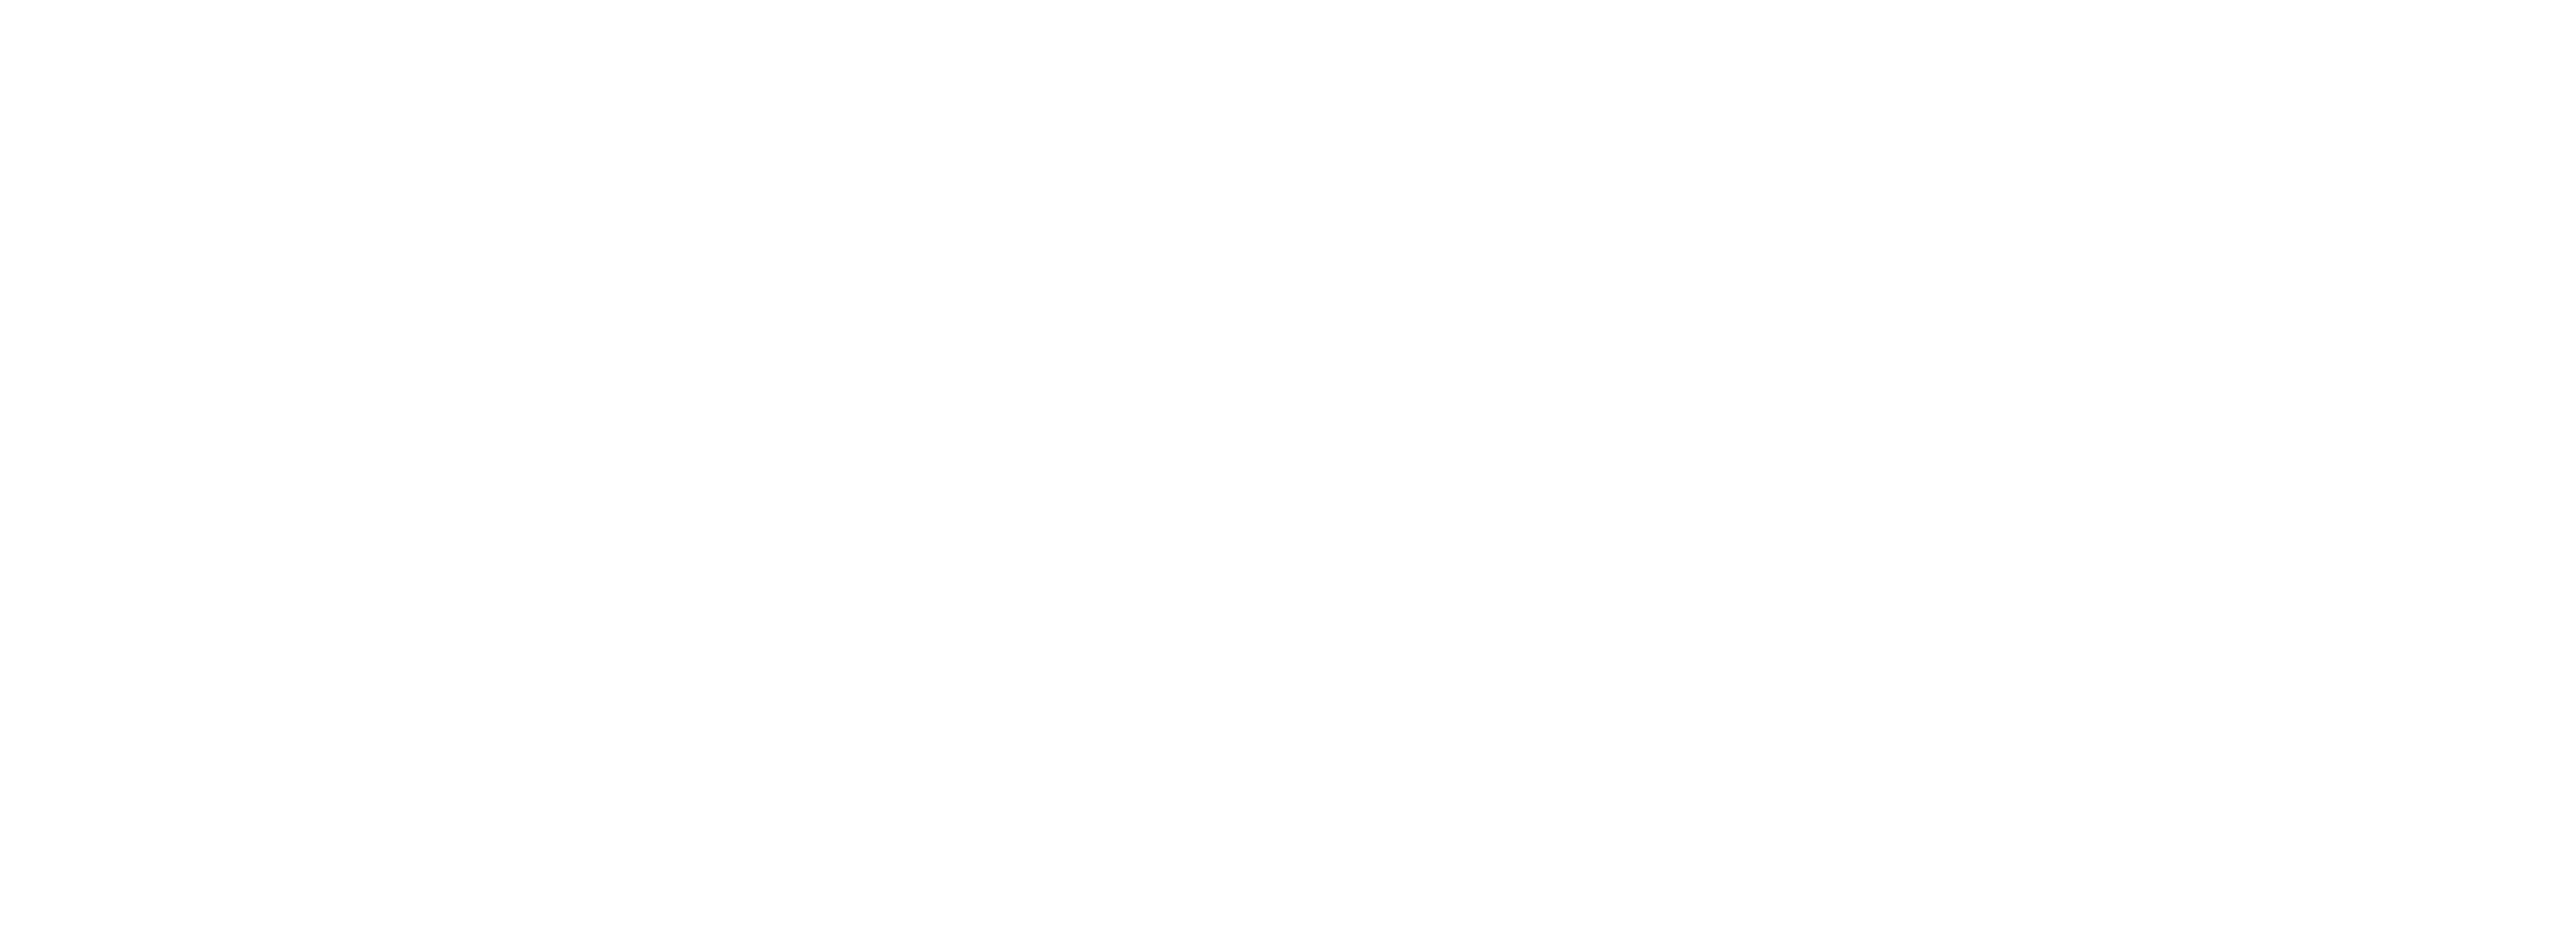 Nico and the Navigators logo